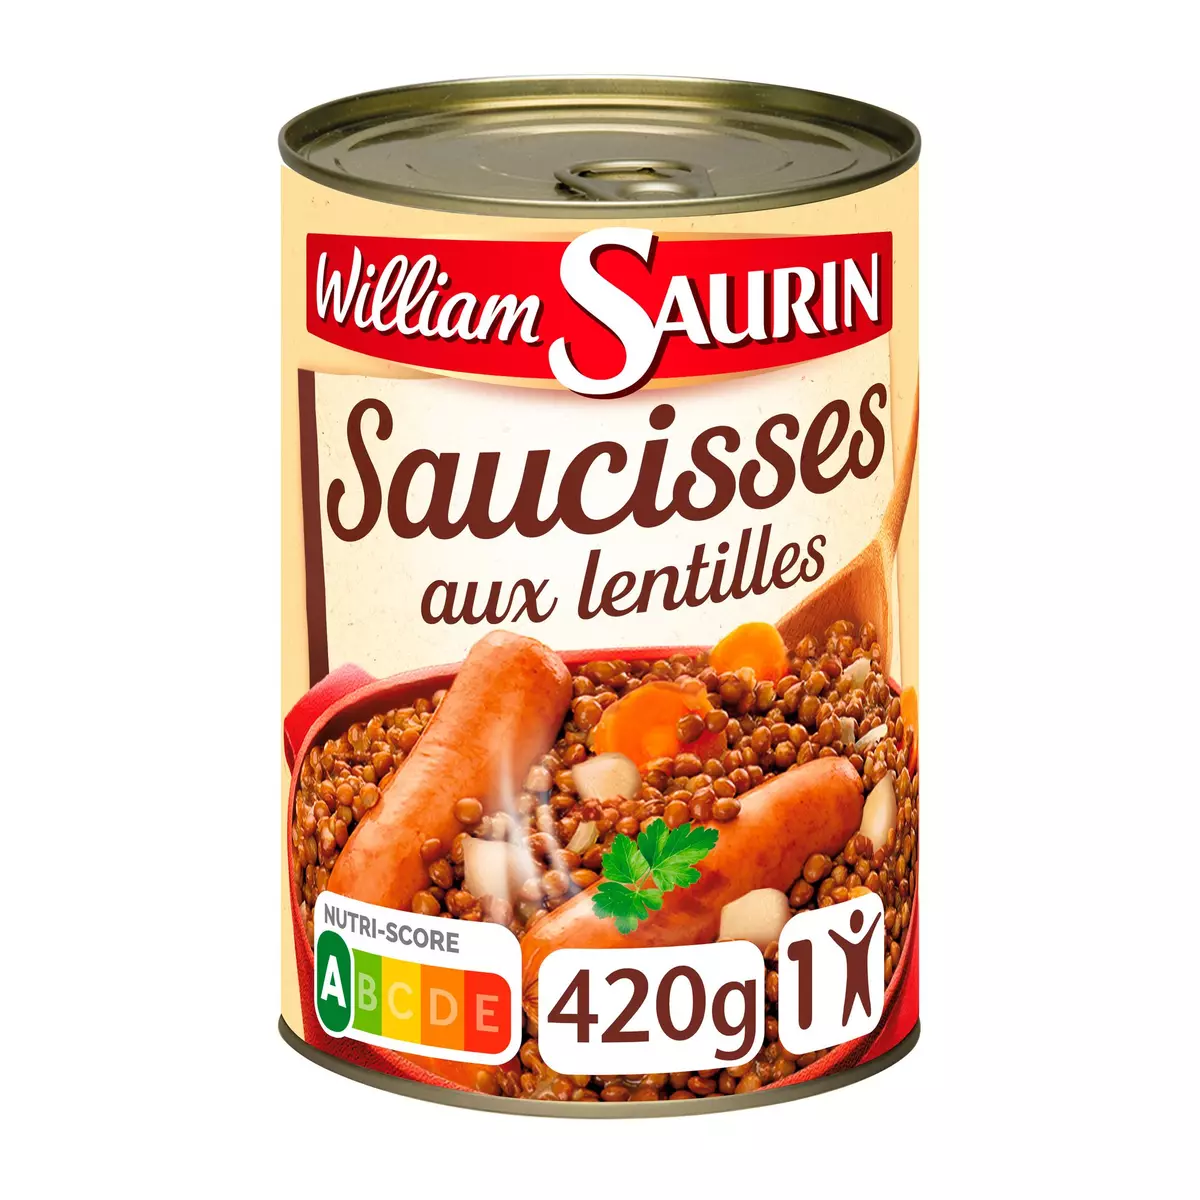 WILLIAM SAURIN Saucisses aux lentilles 1 personne 420g